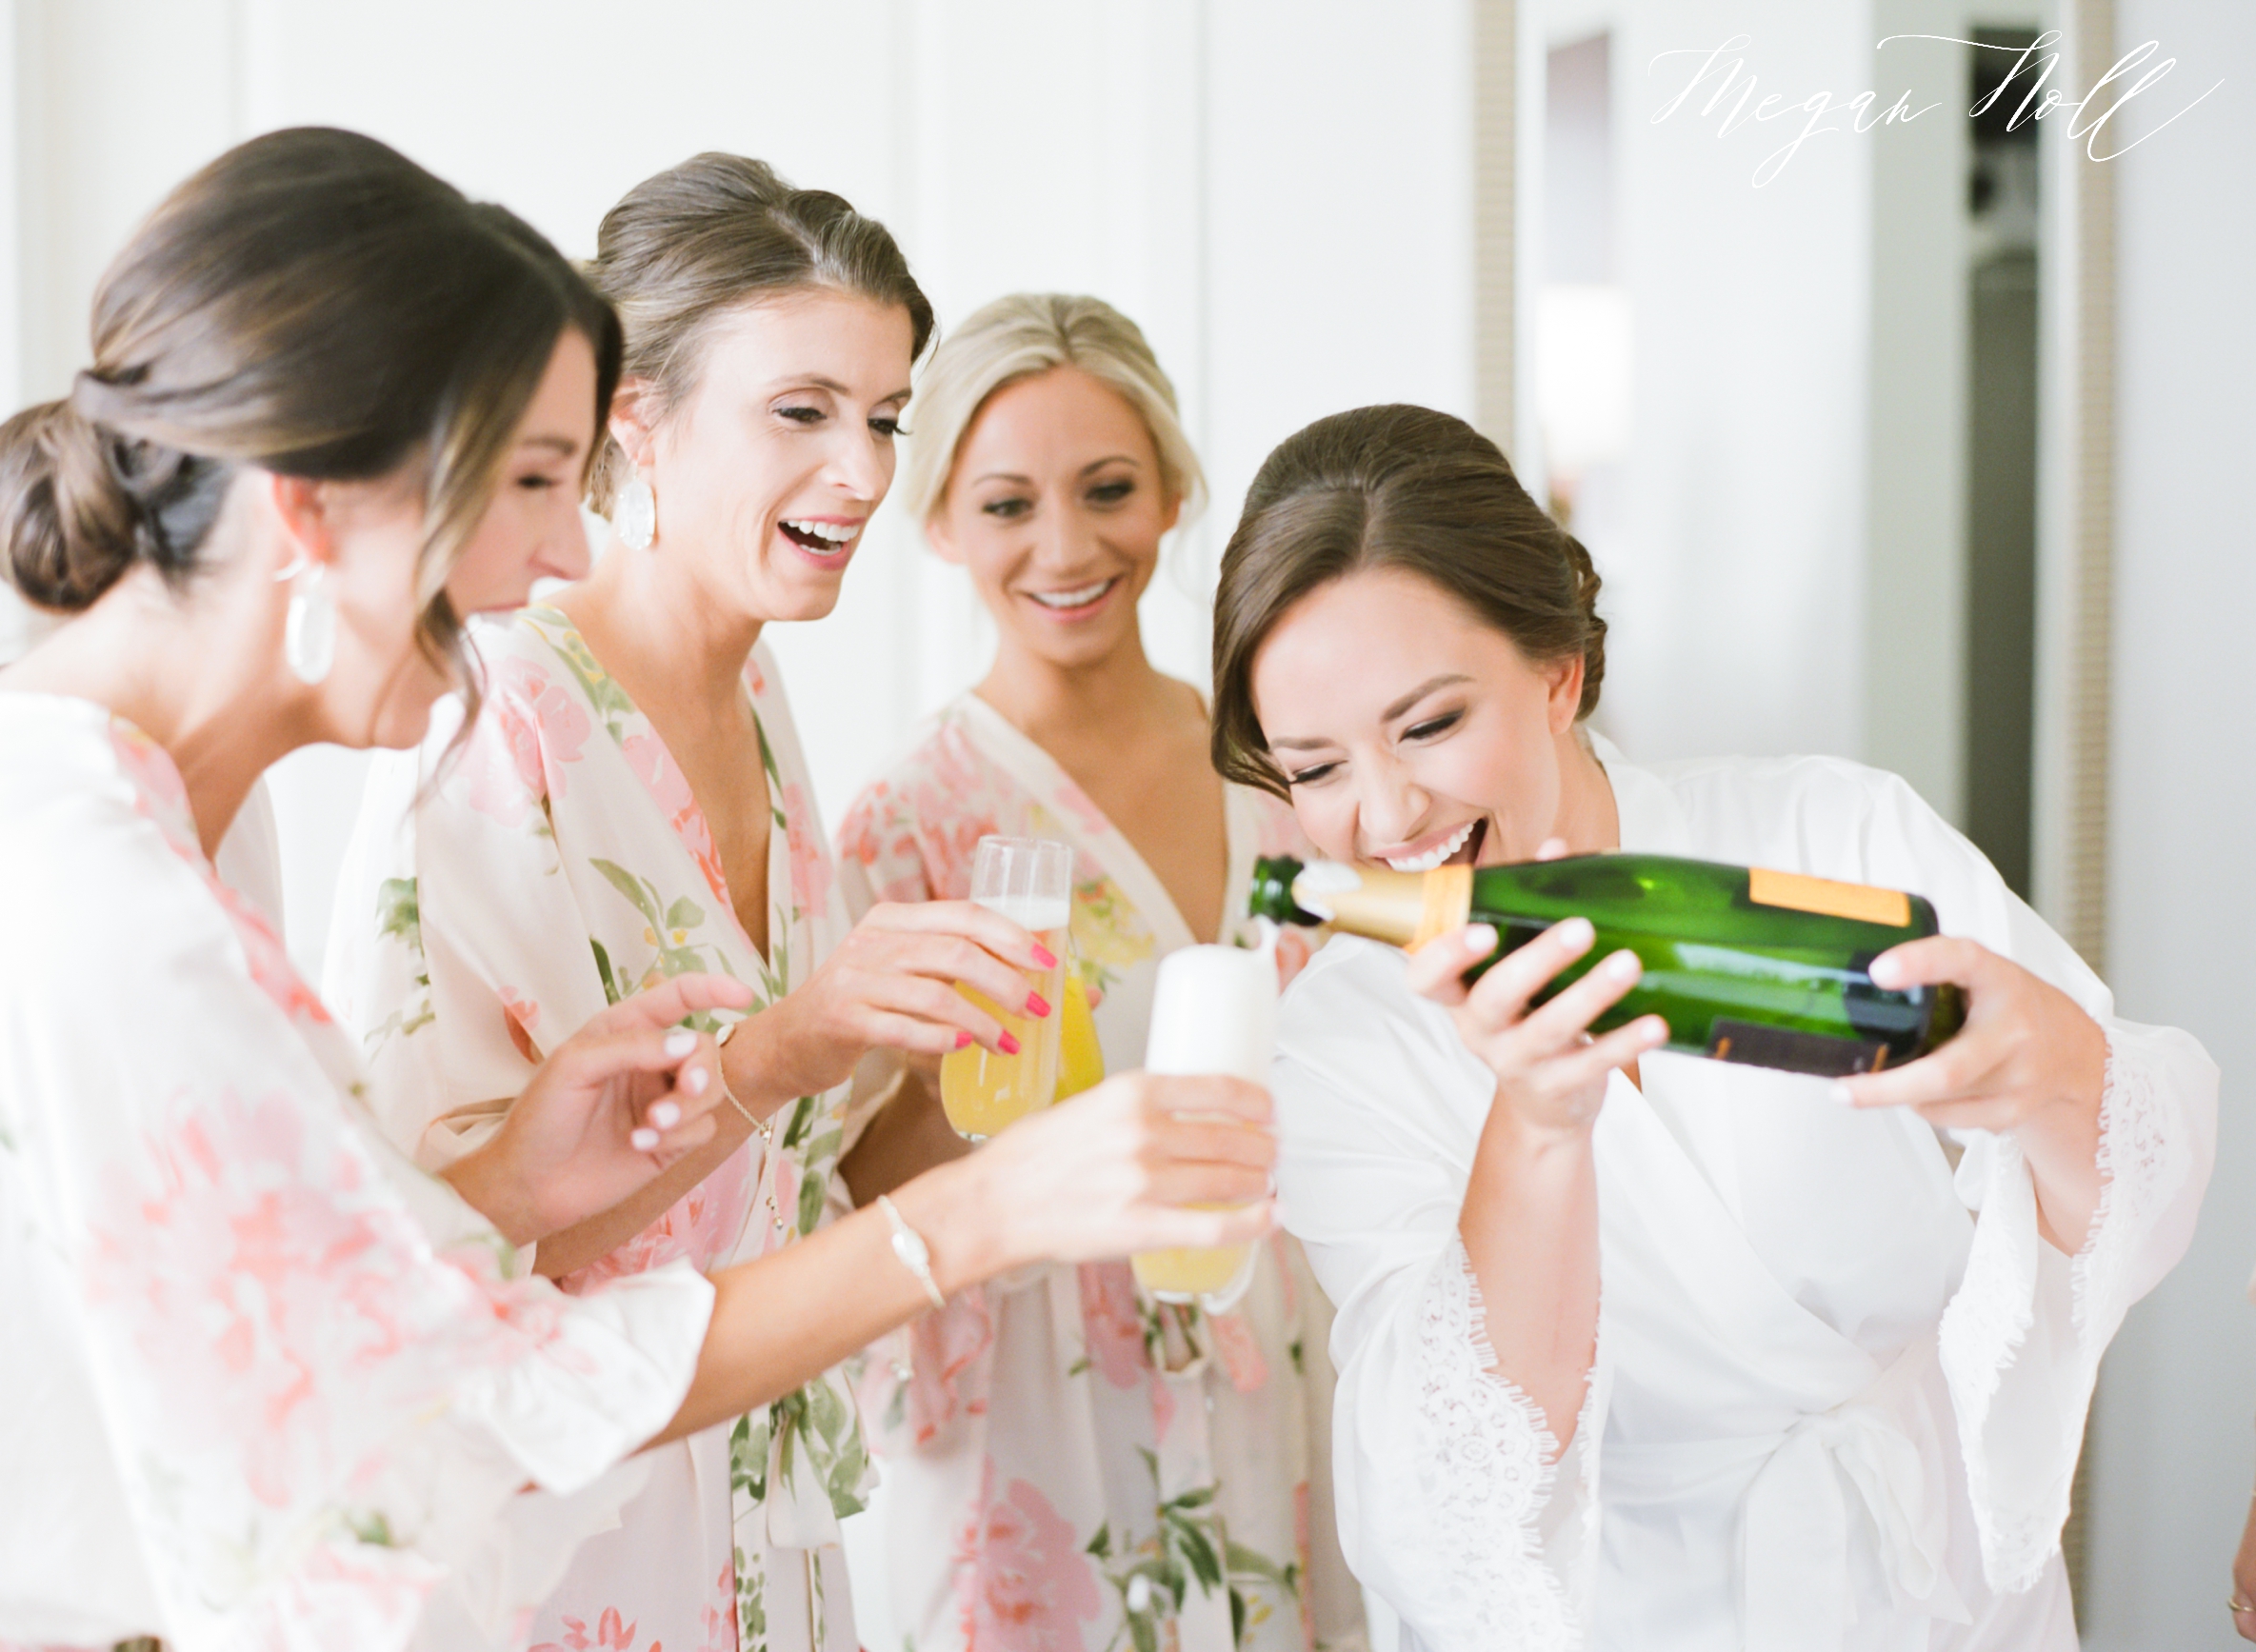 Spill The Tea - Avoiding Drama on wedding days